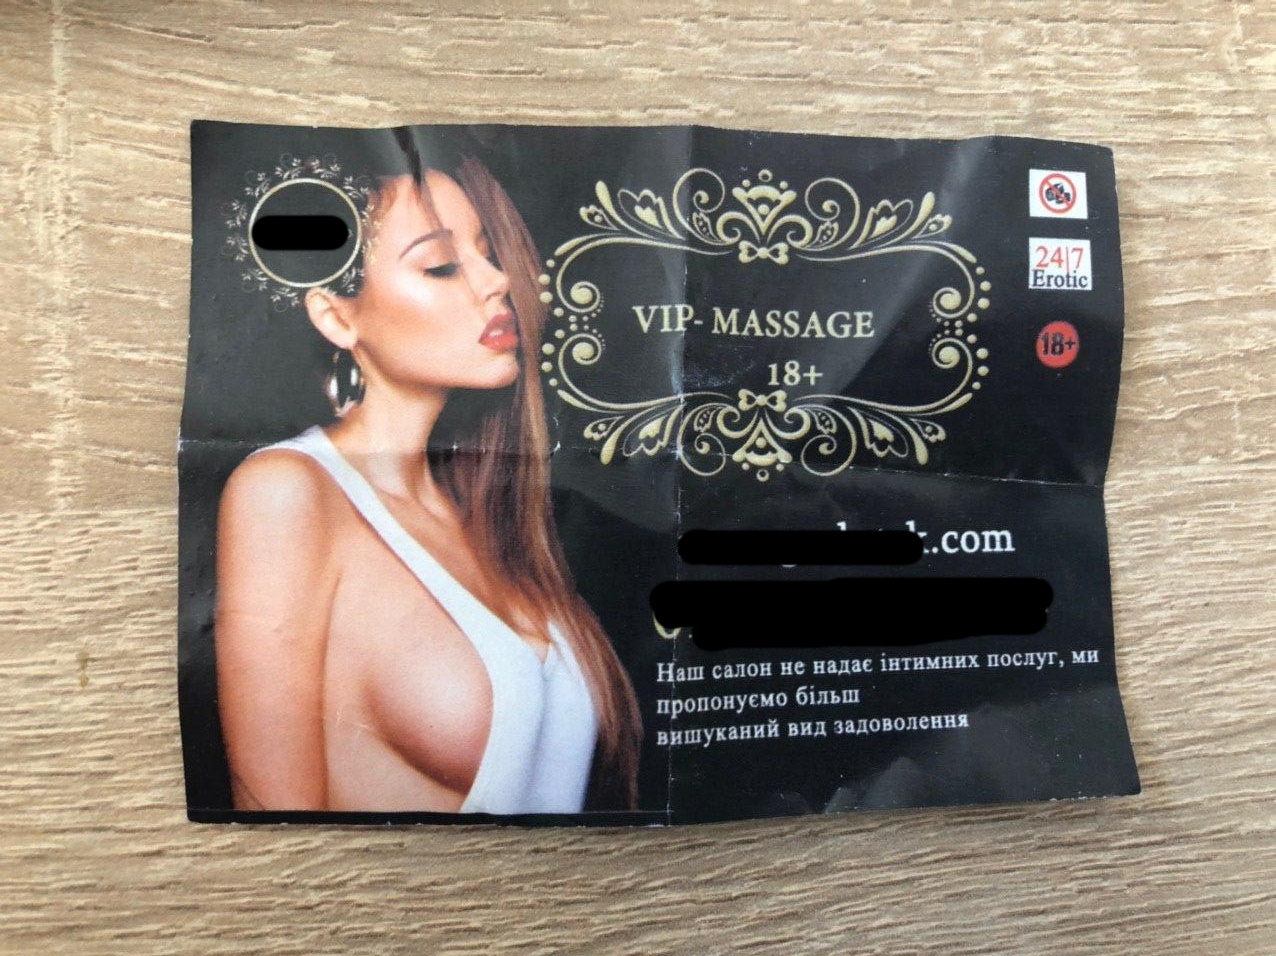 У центрі Луцька вітер розносить листівки про еротичний масаж (ФОТО)